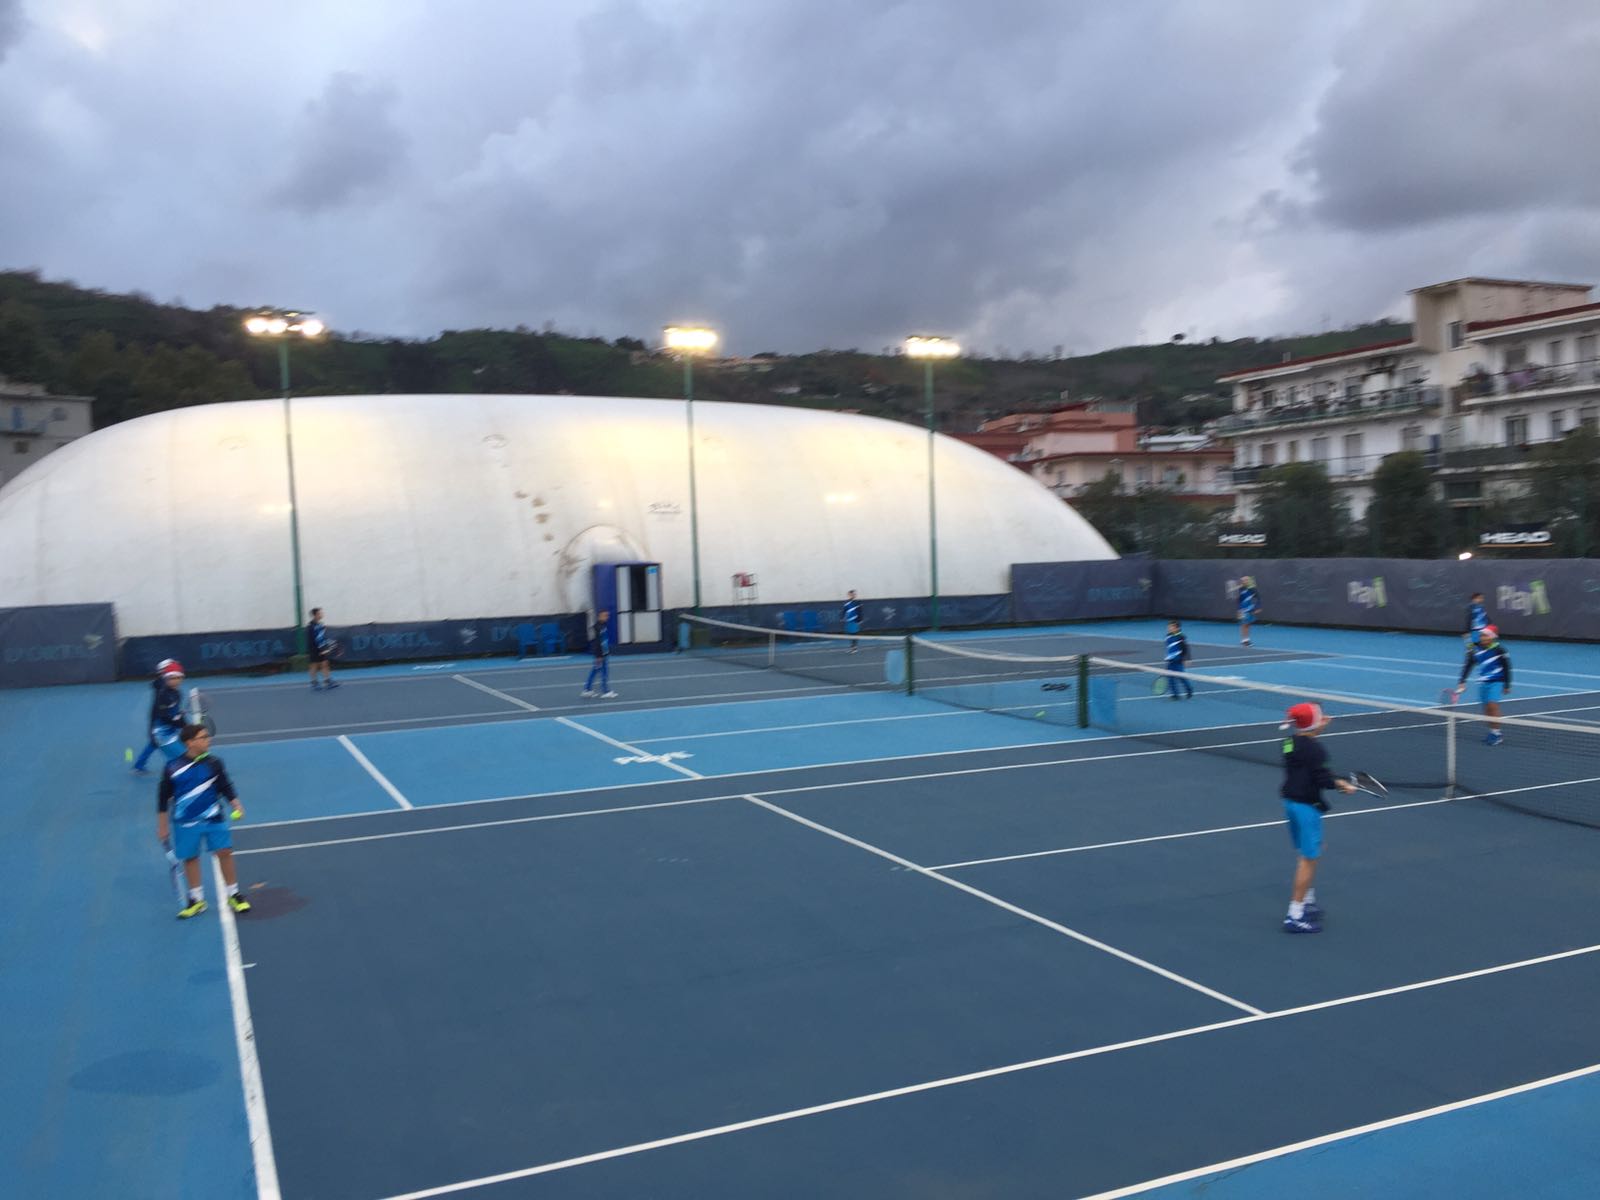 VITA DA ACCADEMIA. Assegnata all’Accademia Tennis Napoli una tappa del Circuito giovanile Fit 2018, il più importante d’Italia.